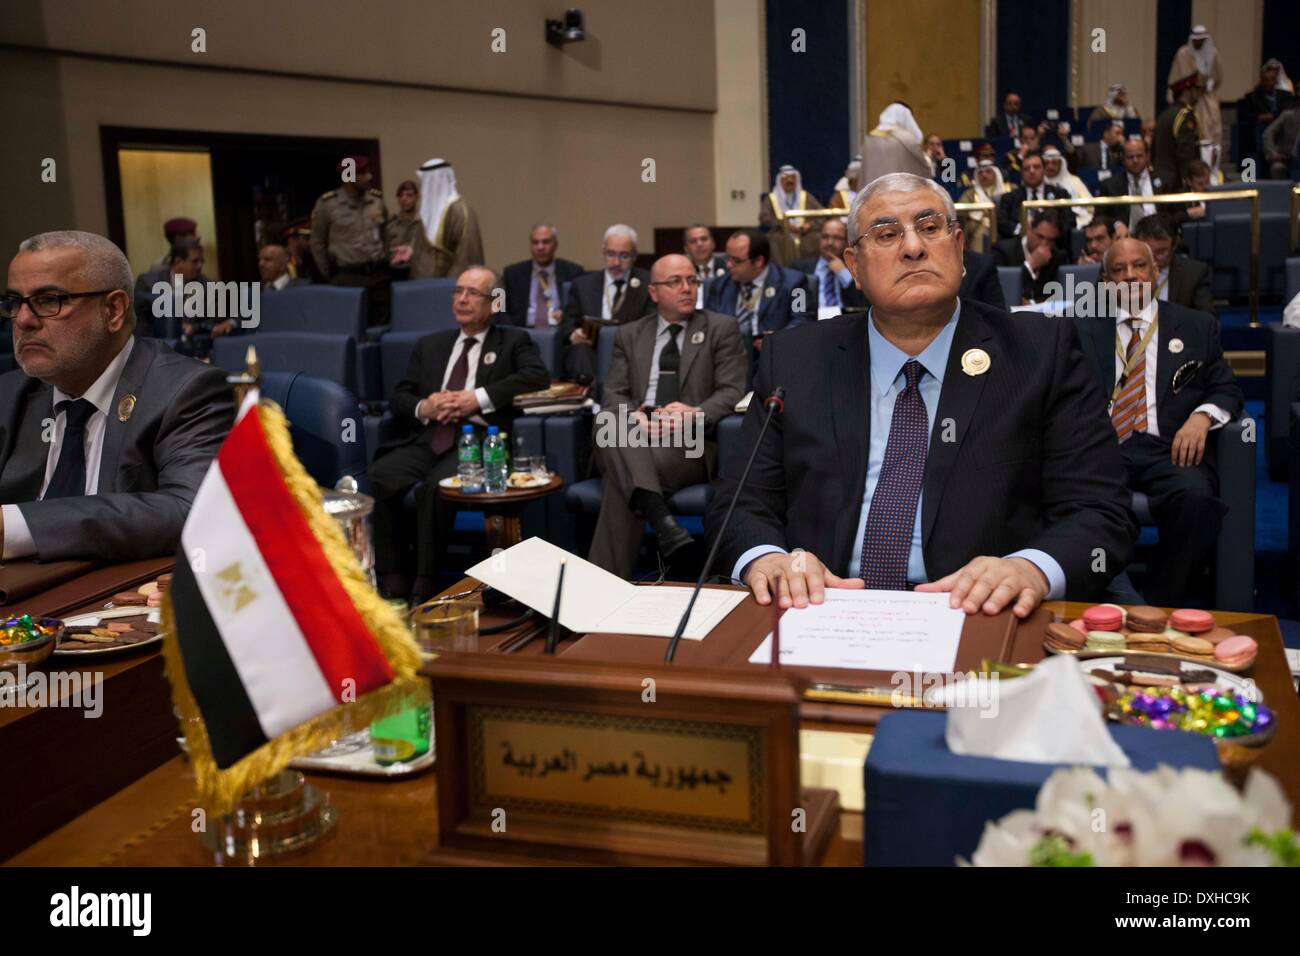 La ville de Koweït, Koweït. Mar 26, 2014. Le Président intérimaire égyptien Adly Mansour assiste à la cérémonie de clôture du 25e Sommet de la Ligue arabe dans la ville de Koweït, Koweït, le 26 mars 2014. Les dirigeants des États arabes a conclu les deux jours du sommet de la Ligue arabe avec l'annonce de Déclaration de Koweït le mercredi à Bayan Palace au Koweït. Credit : Cui Xinyu/Xinhua/Alamy Live News Banque D'Images